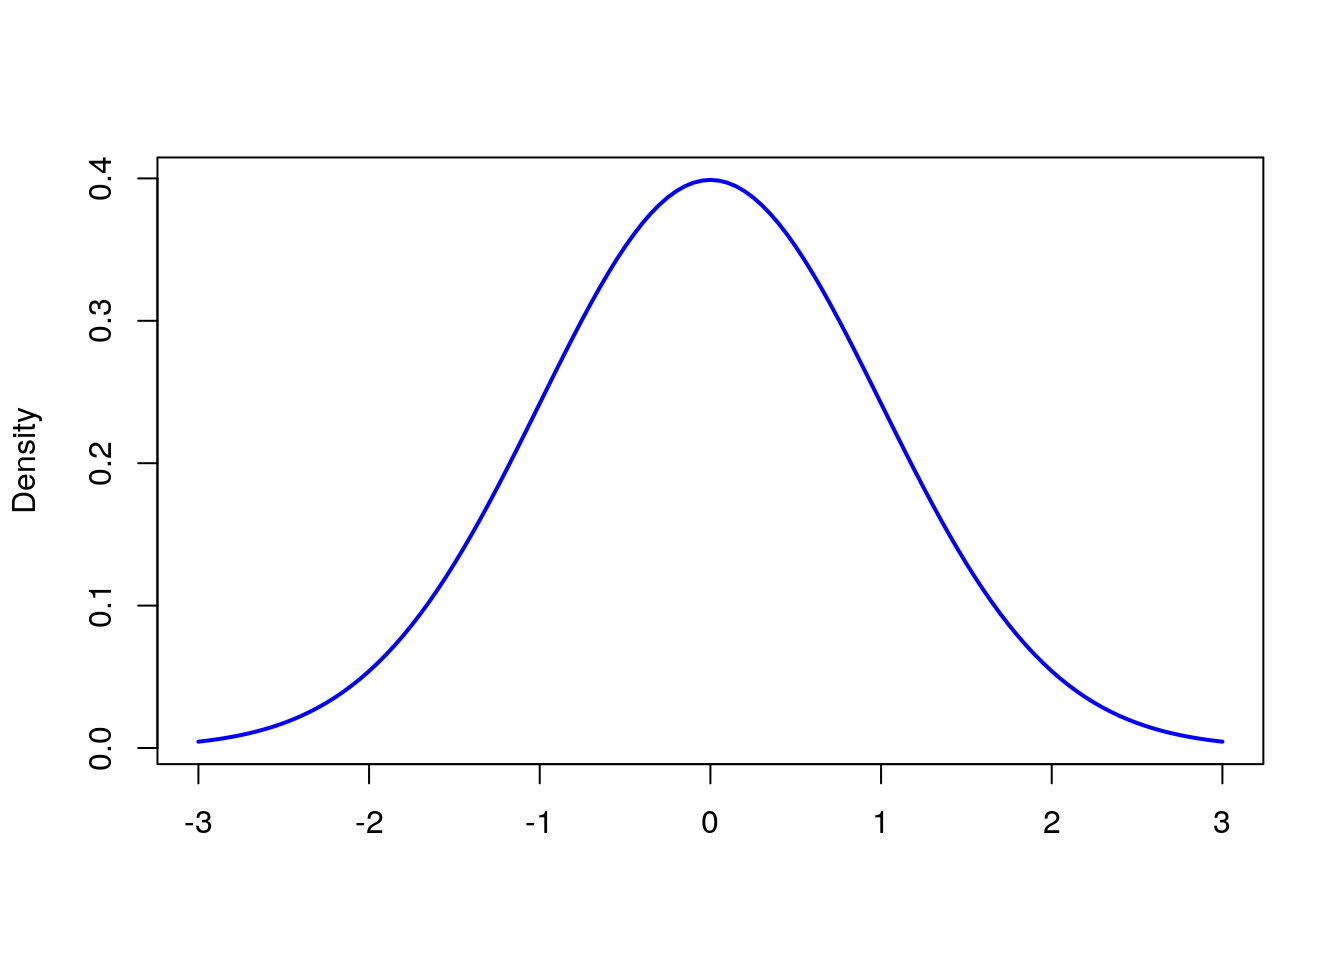 Chapter 8 Regresión de Poisson | Modelos lineales generalizados con R